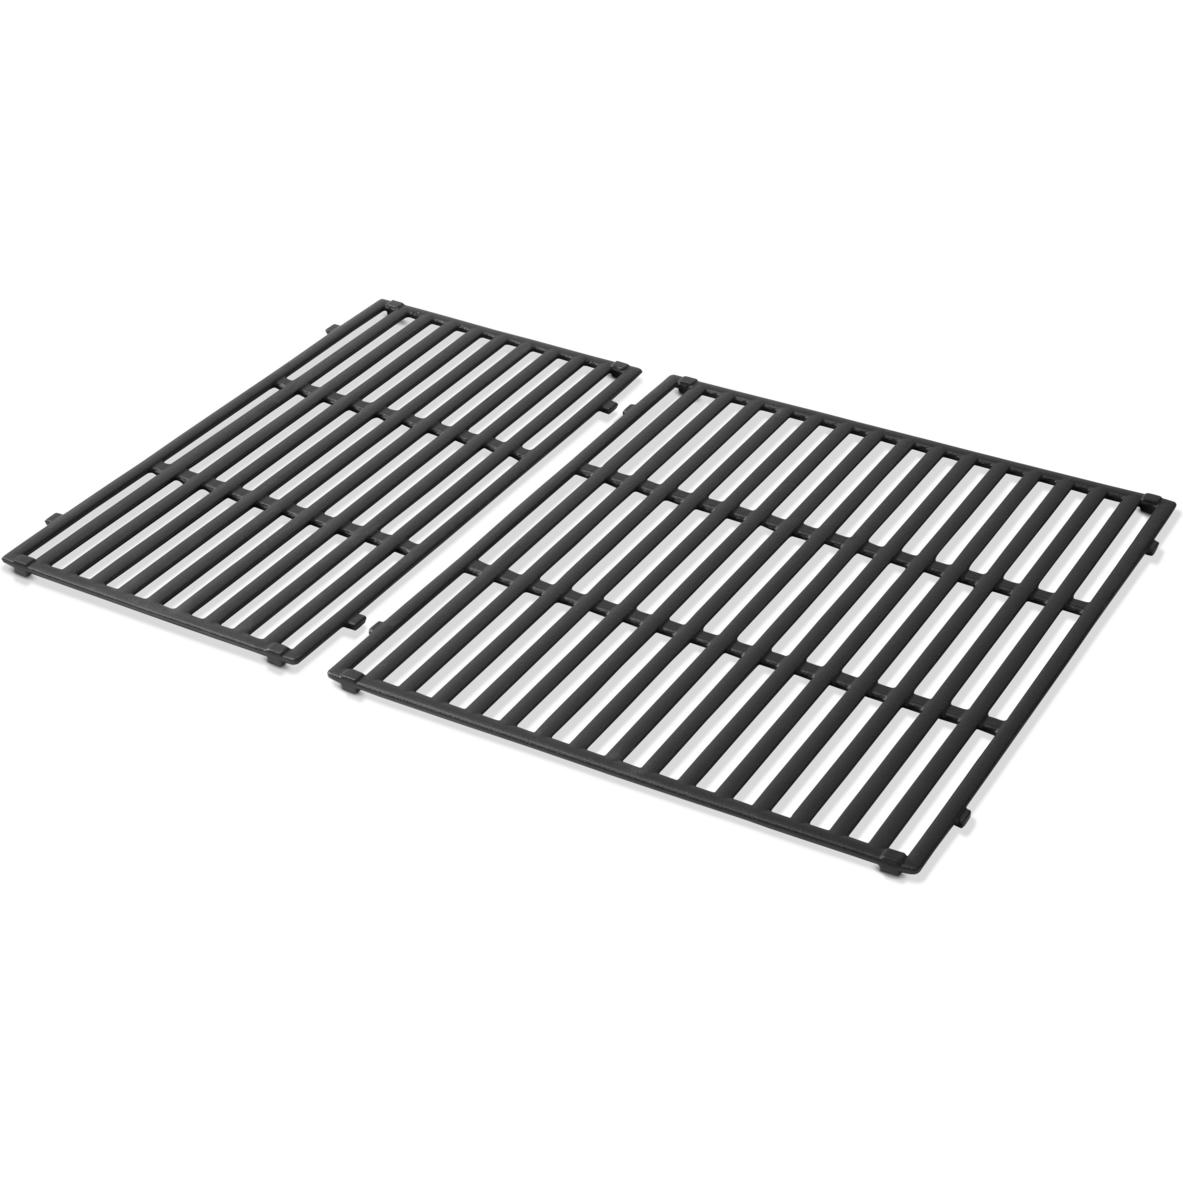 Фарфоровая эмалированная чугунная решетка Weber Crafted для гриля Genesis Series 300 черная (7853) фото 